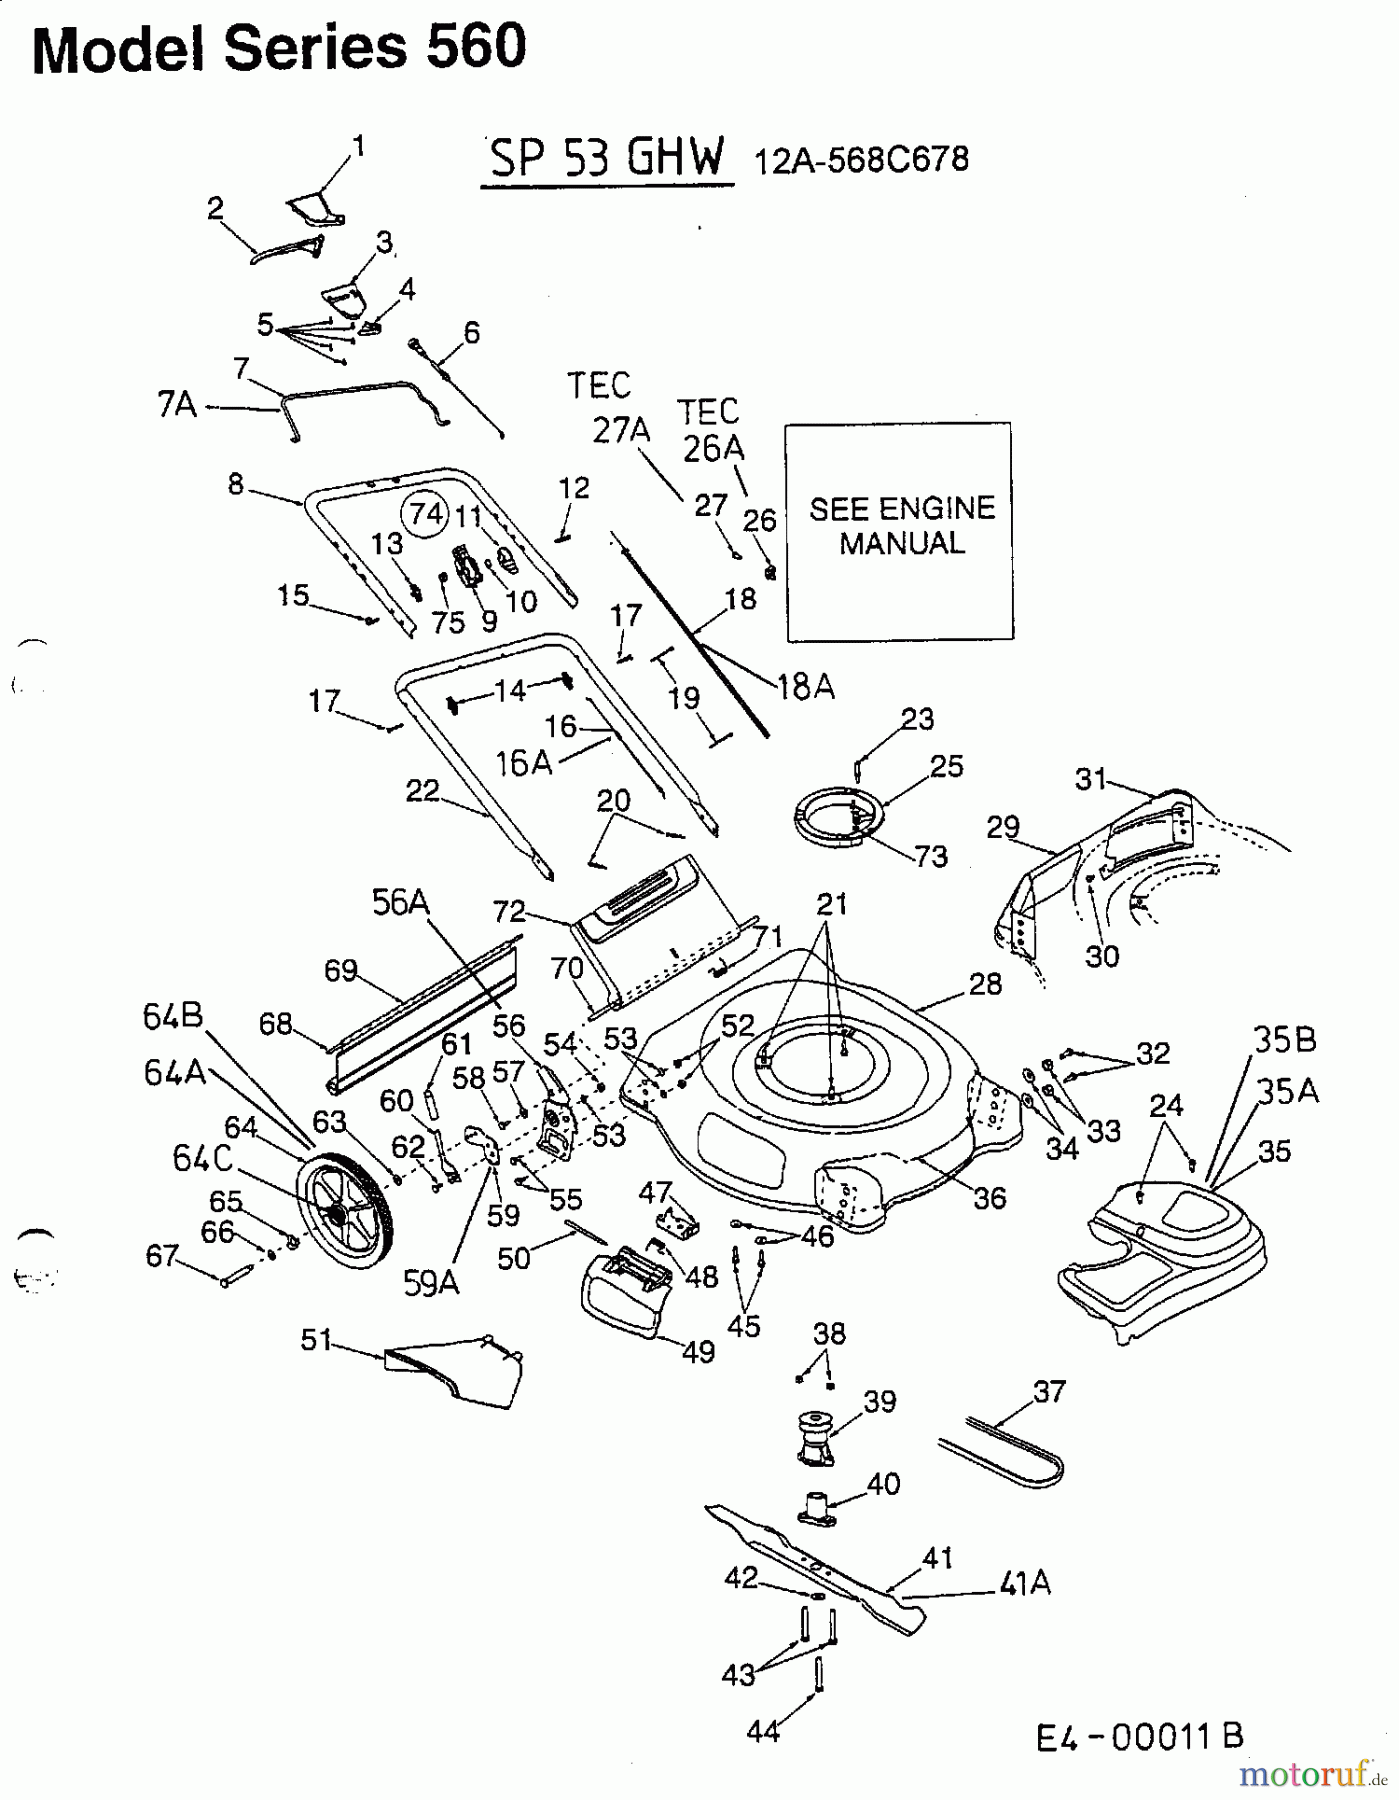  MTD Motormäher mit Antrieb SP 53 GHW 12A-568C678  (2001) Grundgerät